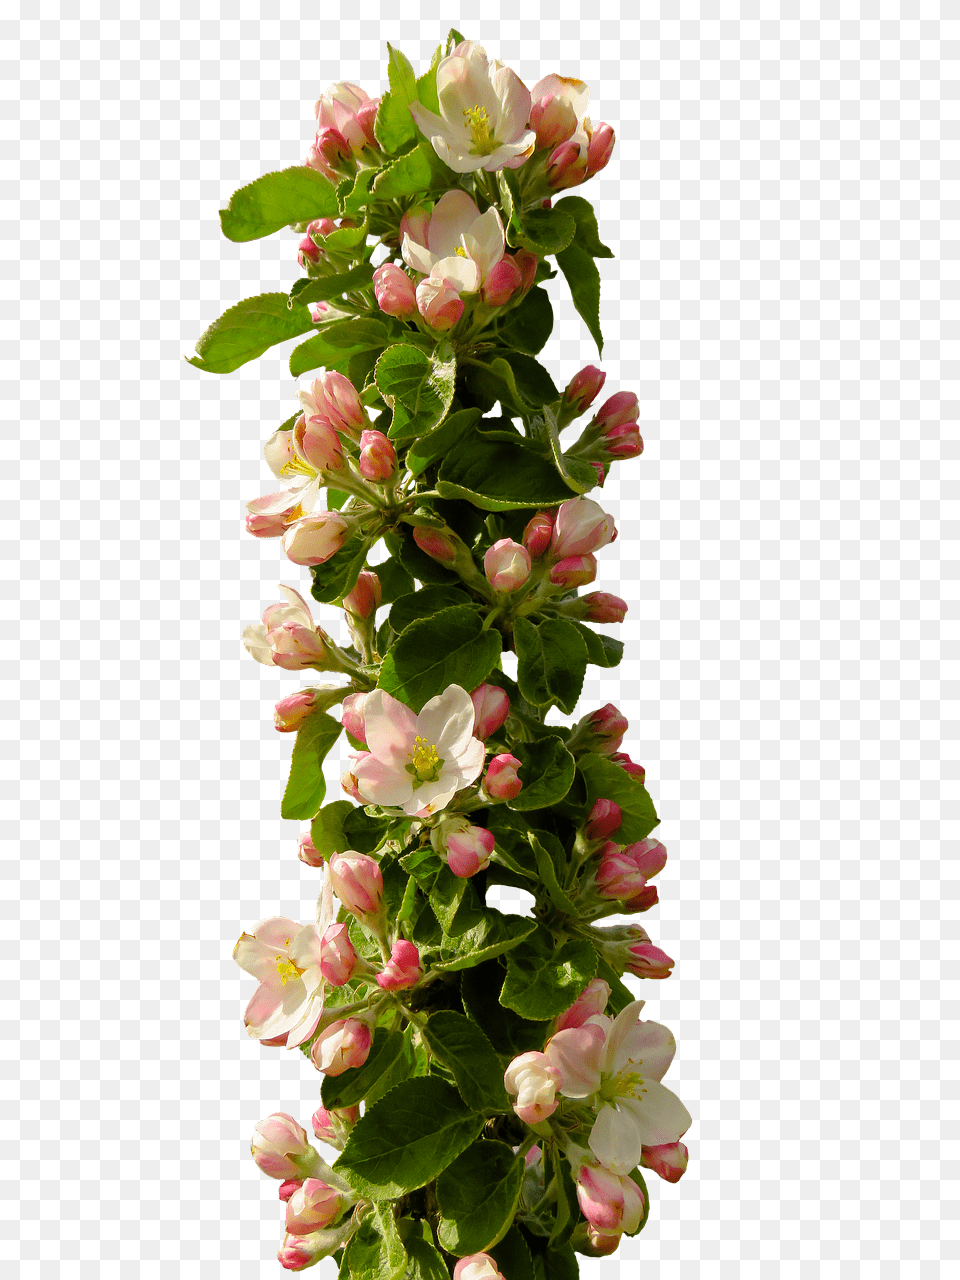 Spring Flower Composition, Flower Arrangement, Geranium, Petal, Plant Free Png Download